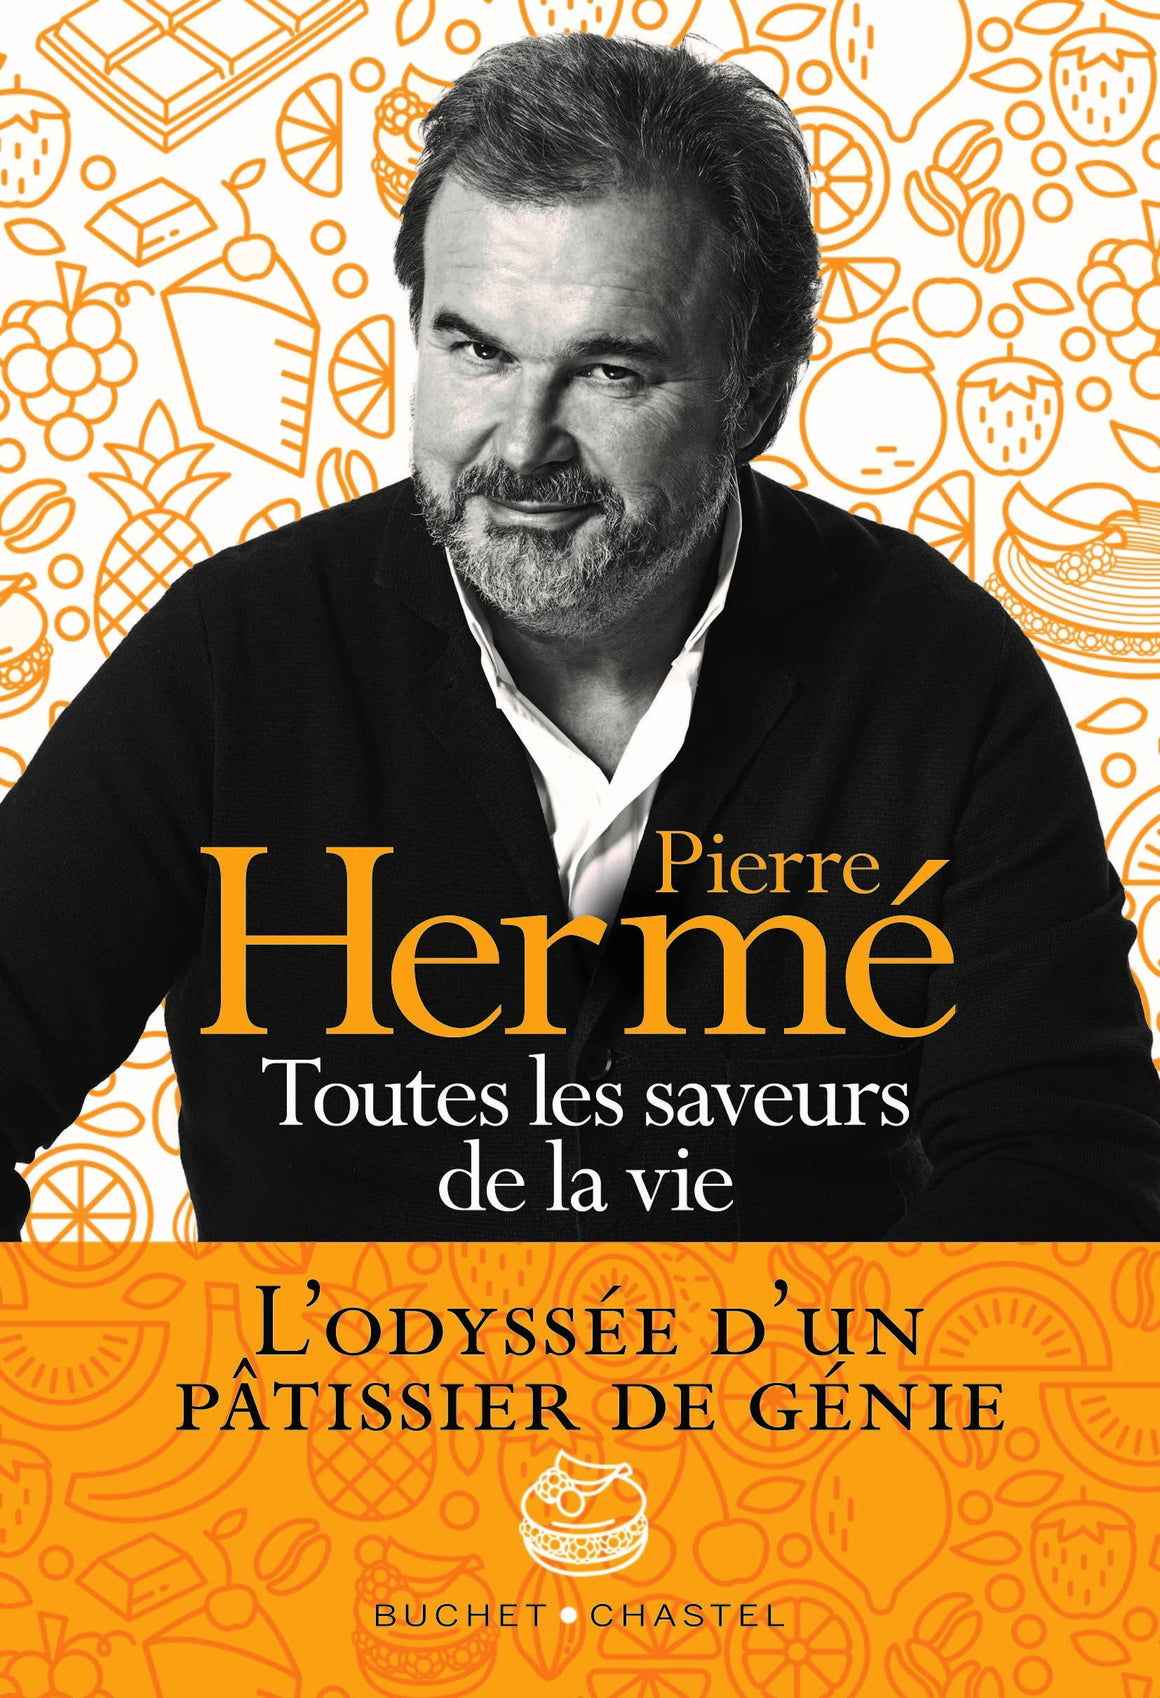 Toutes les saveurs de la vie: L’odyssée d'un pâtissier de génie (Pierre Hermé)